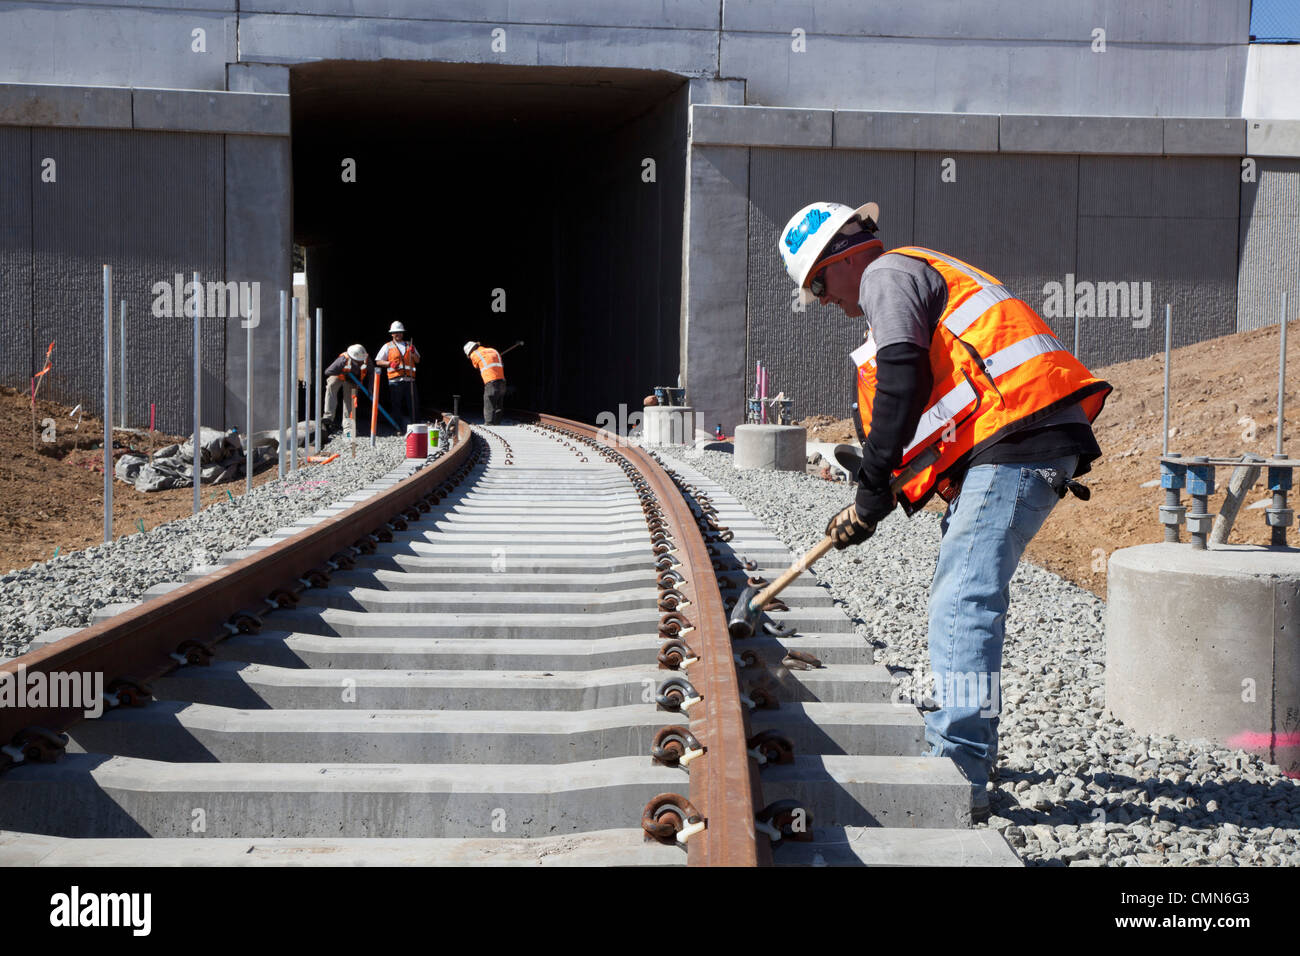 Lakewood, Colorado - travailleurs construisent un système de transport urbain léger sur rail reliant Denver avec ses banlieues ouest. Banque D'Images